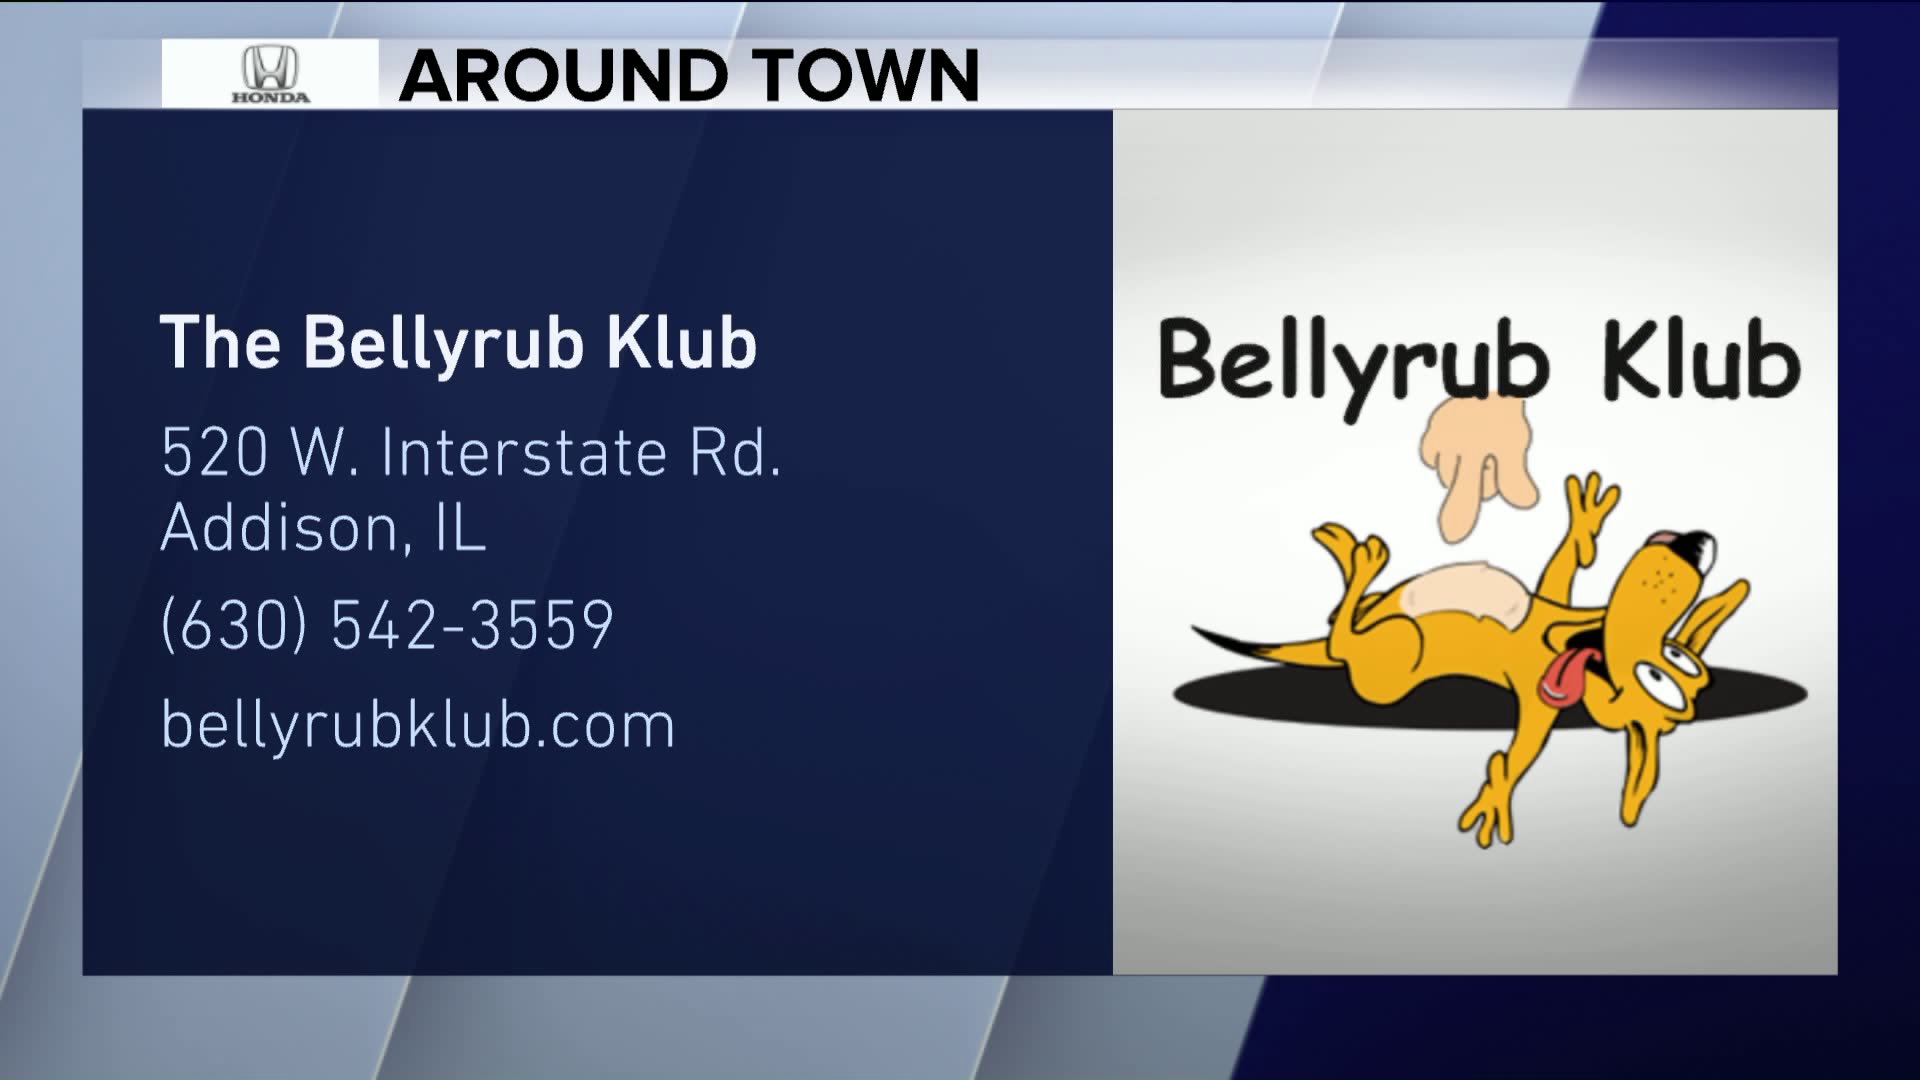 Around Town checks out Bellyrub Klub